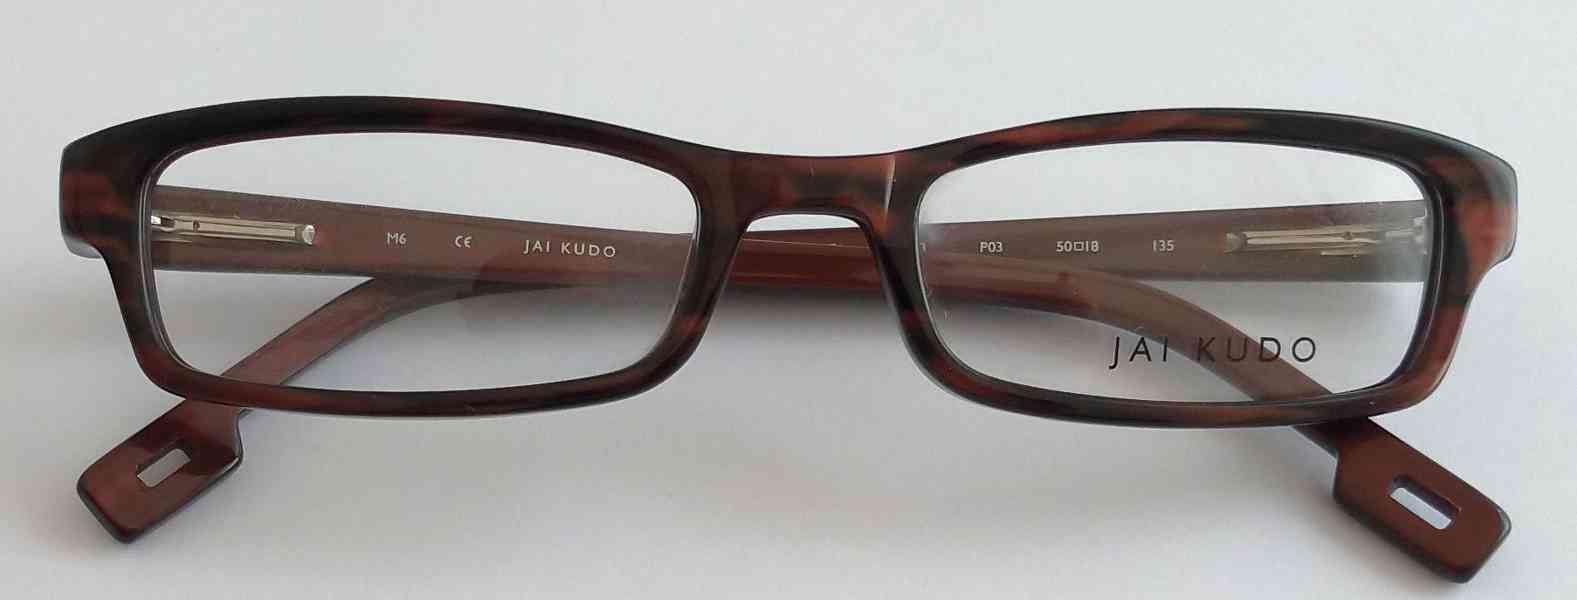 JAI KUDO 1733 P03 dámské brýlové obruby 50-18-135 MOC:2600Kč - foto 7